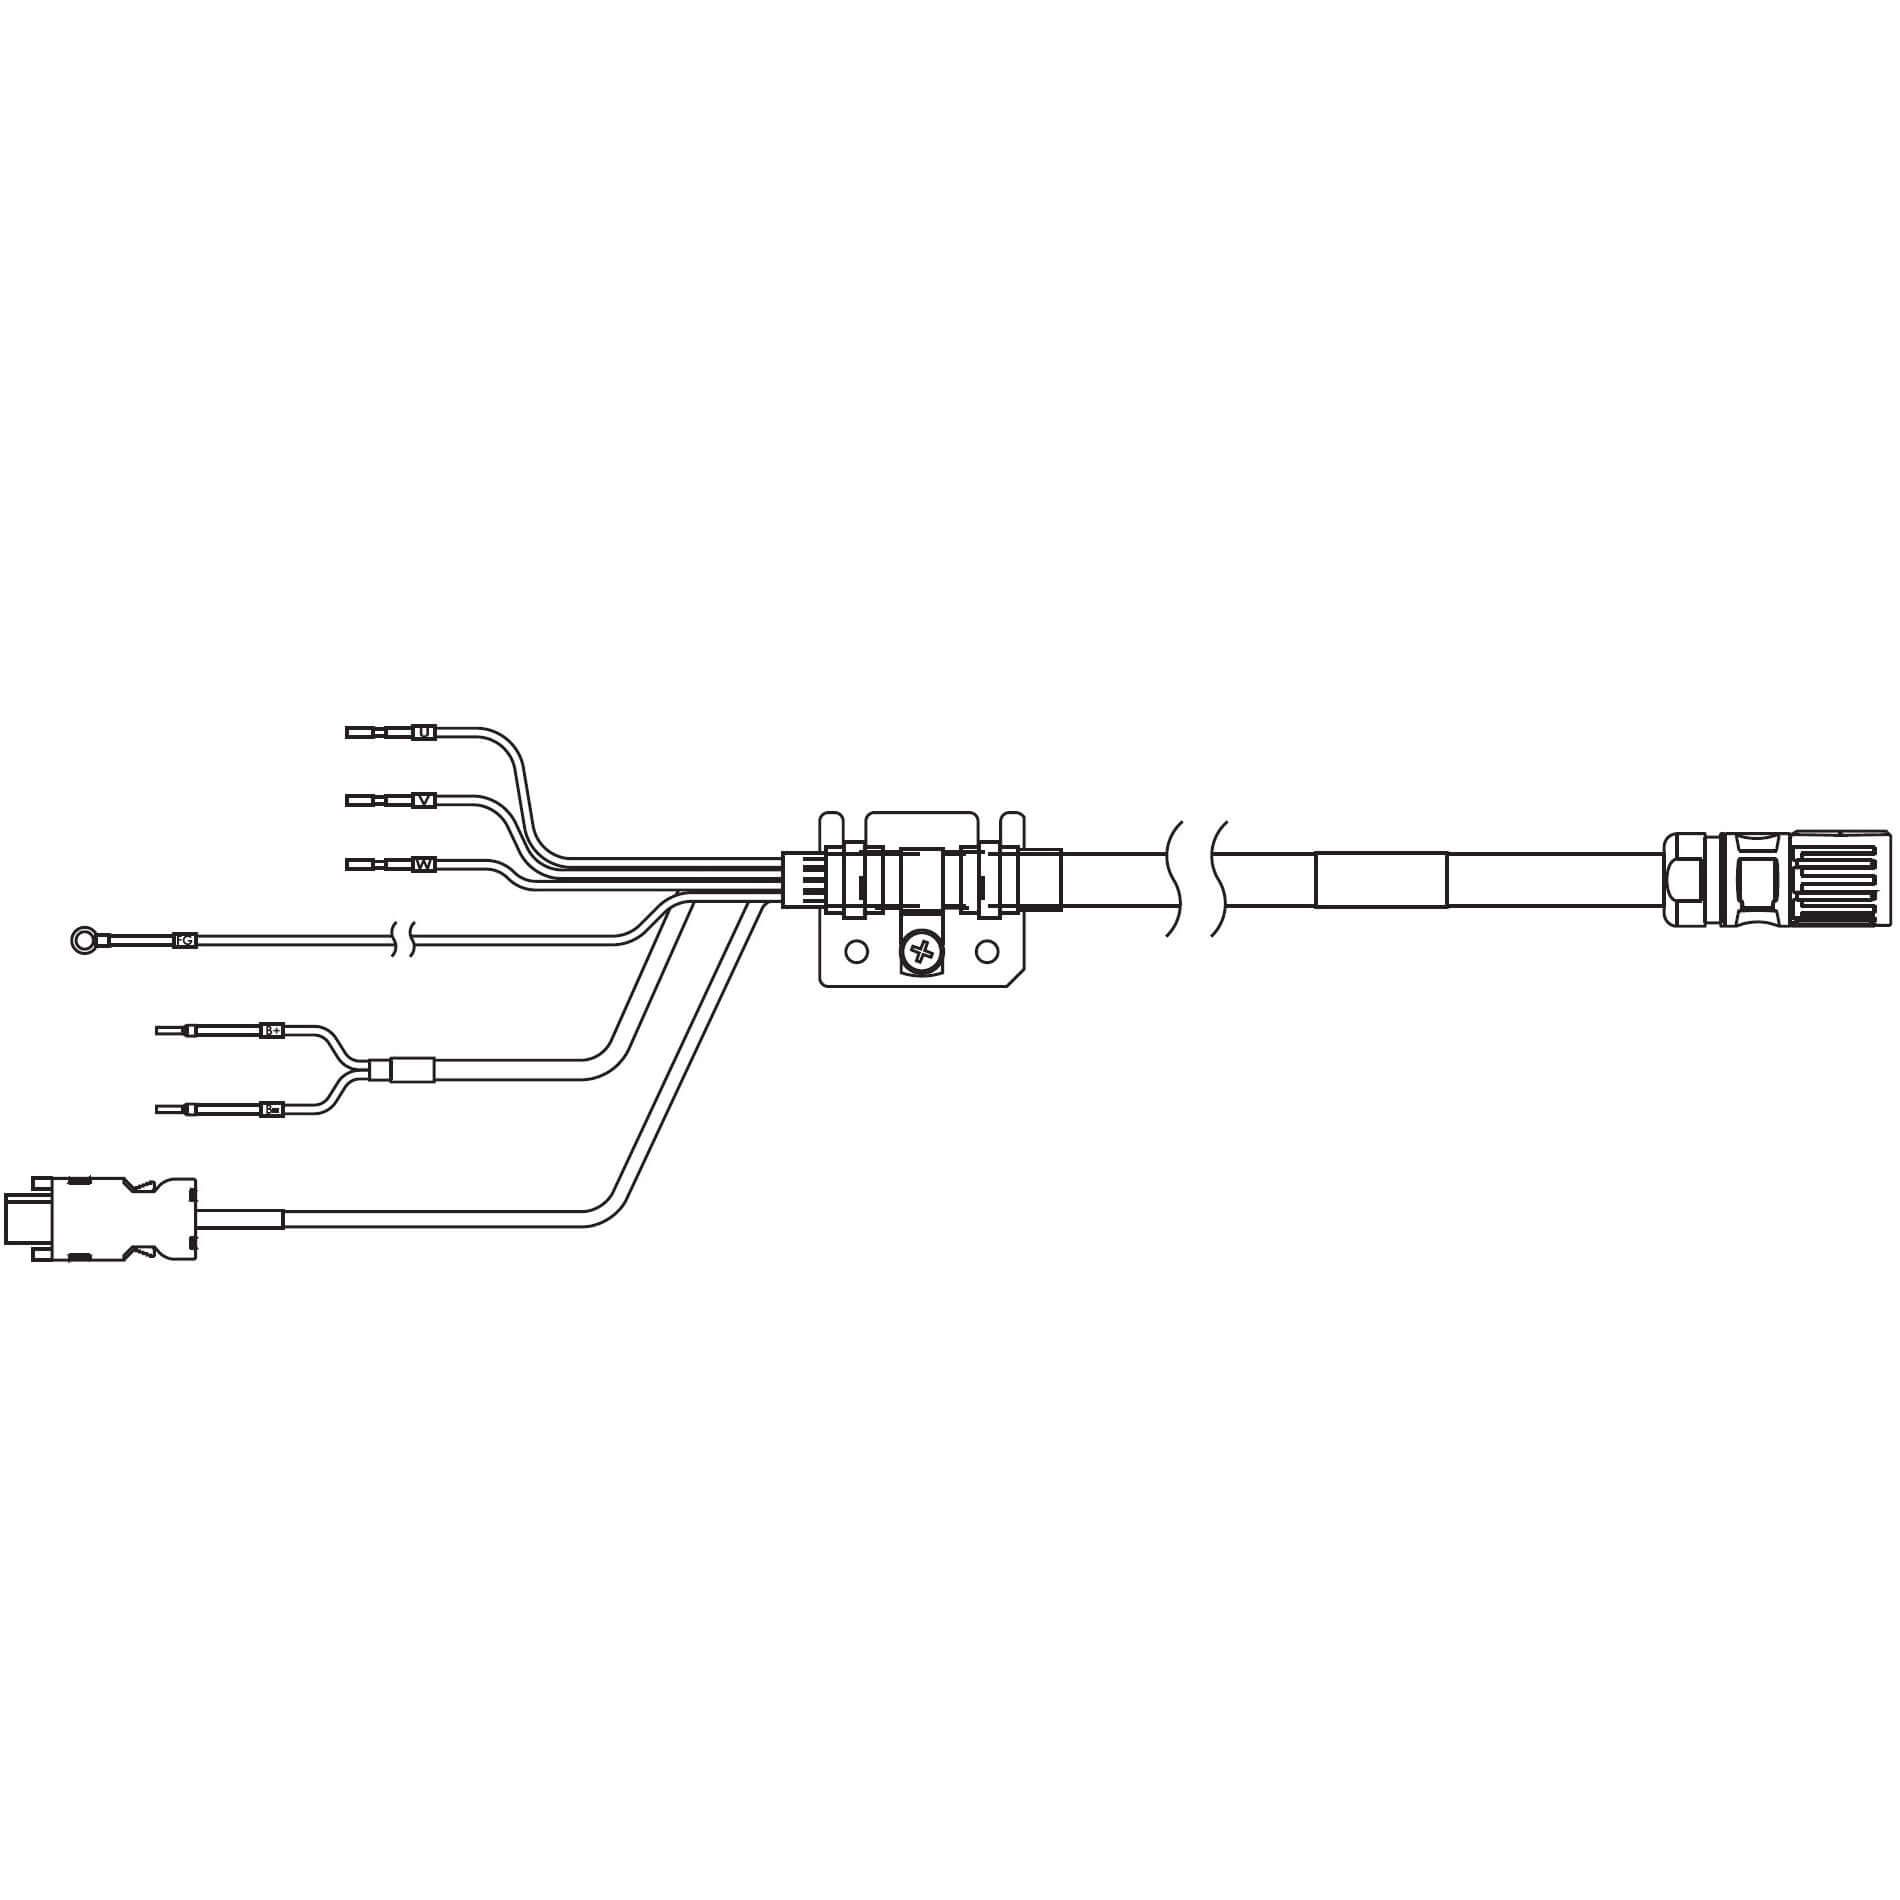 1S-Servomotor mit Safe Motion, Integrierte Kabel R88A-CX1C005SF